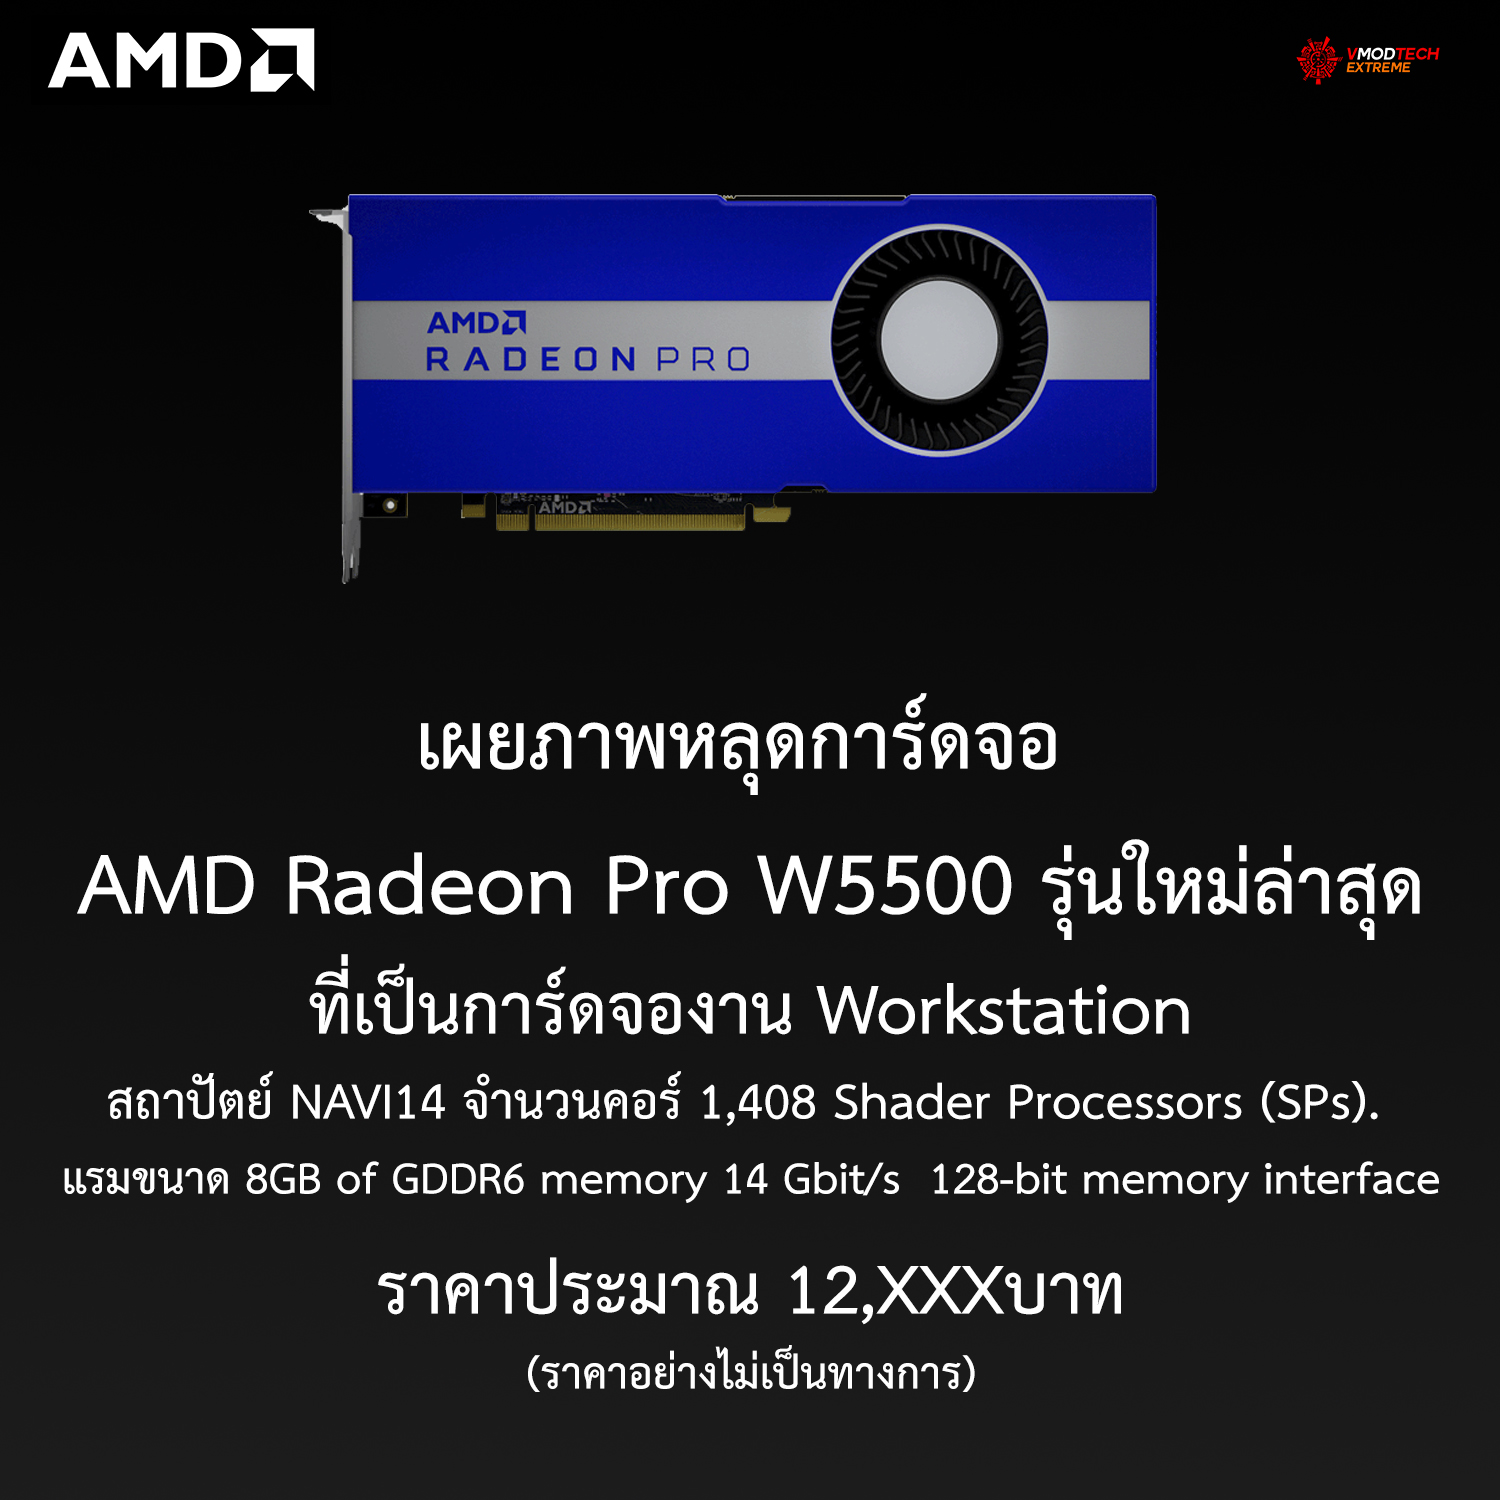 amd radeon pro w5500 เผยภาพหลุดการ์ดจอ AMD Radeon Pro W5500 รุ่นใหม่ล่าสุดที่เป็นการ์ดจองาน Workstation ราคาประมาณ 12,XXXบาท